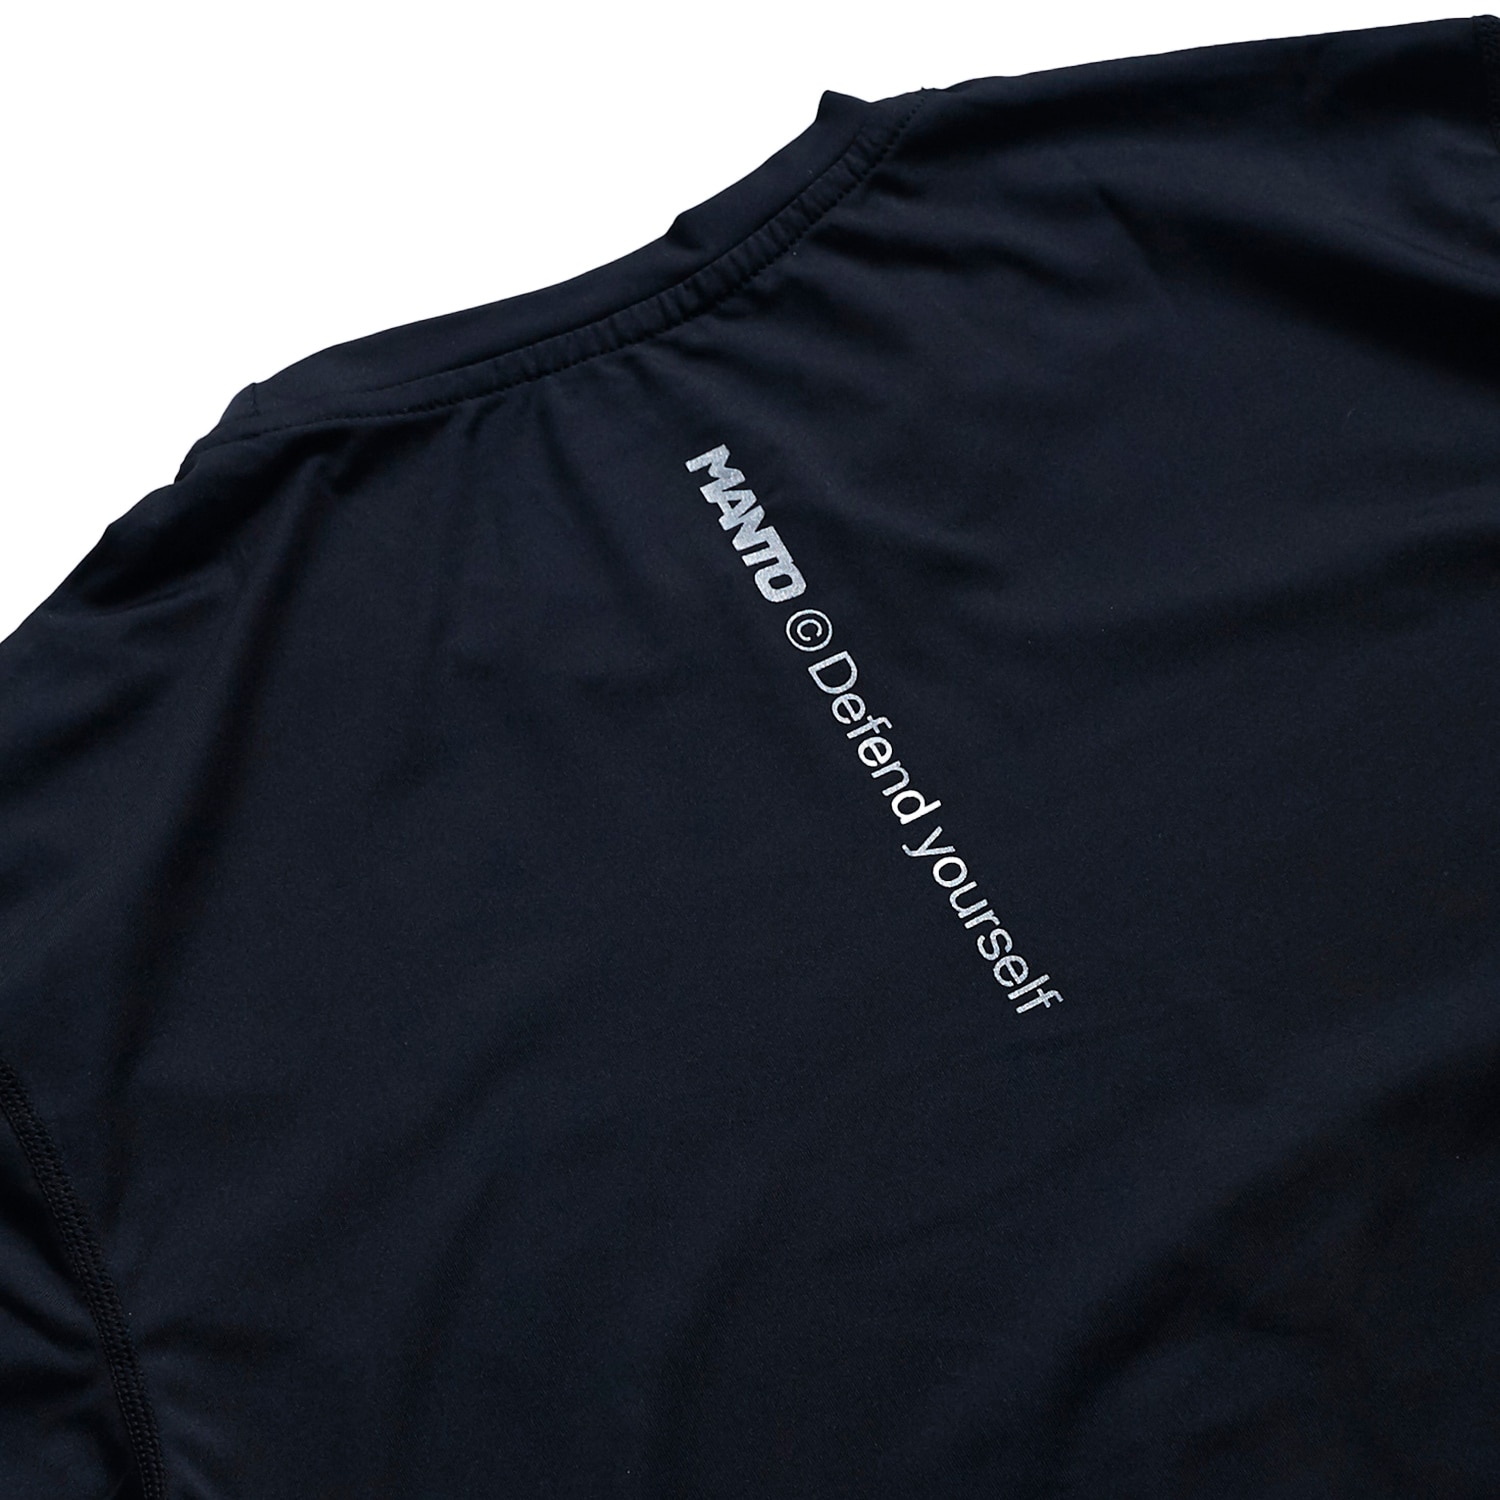 Koszulka termoaktywna Manto Athlete 2.0 - Black